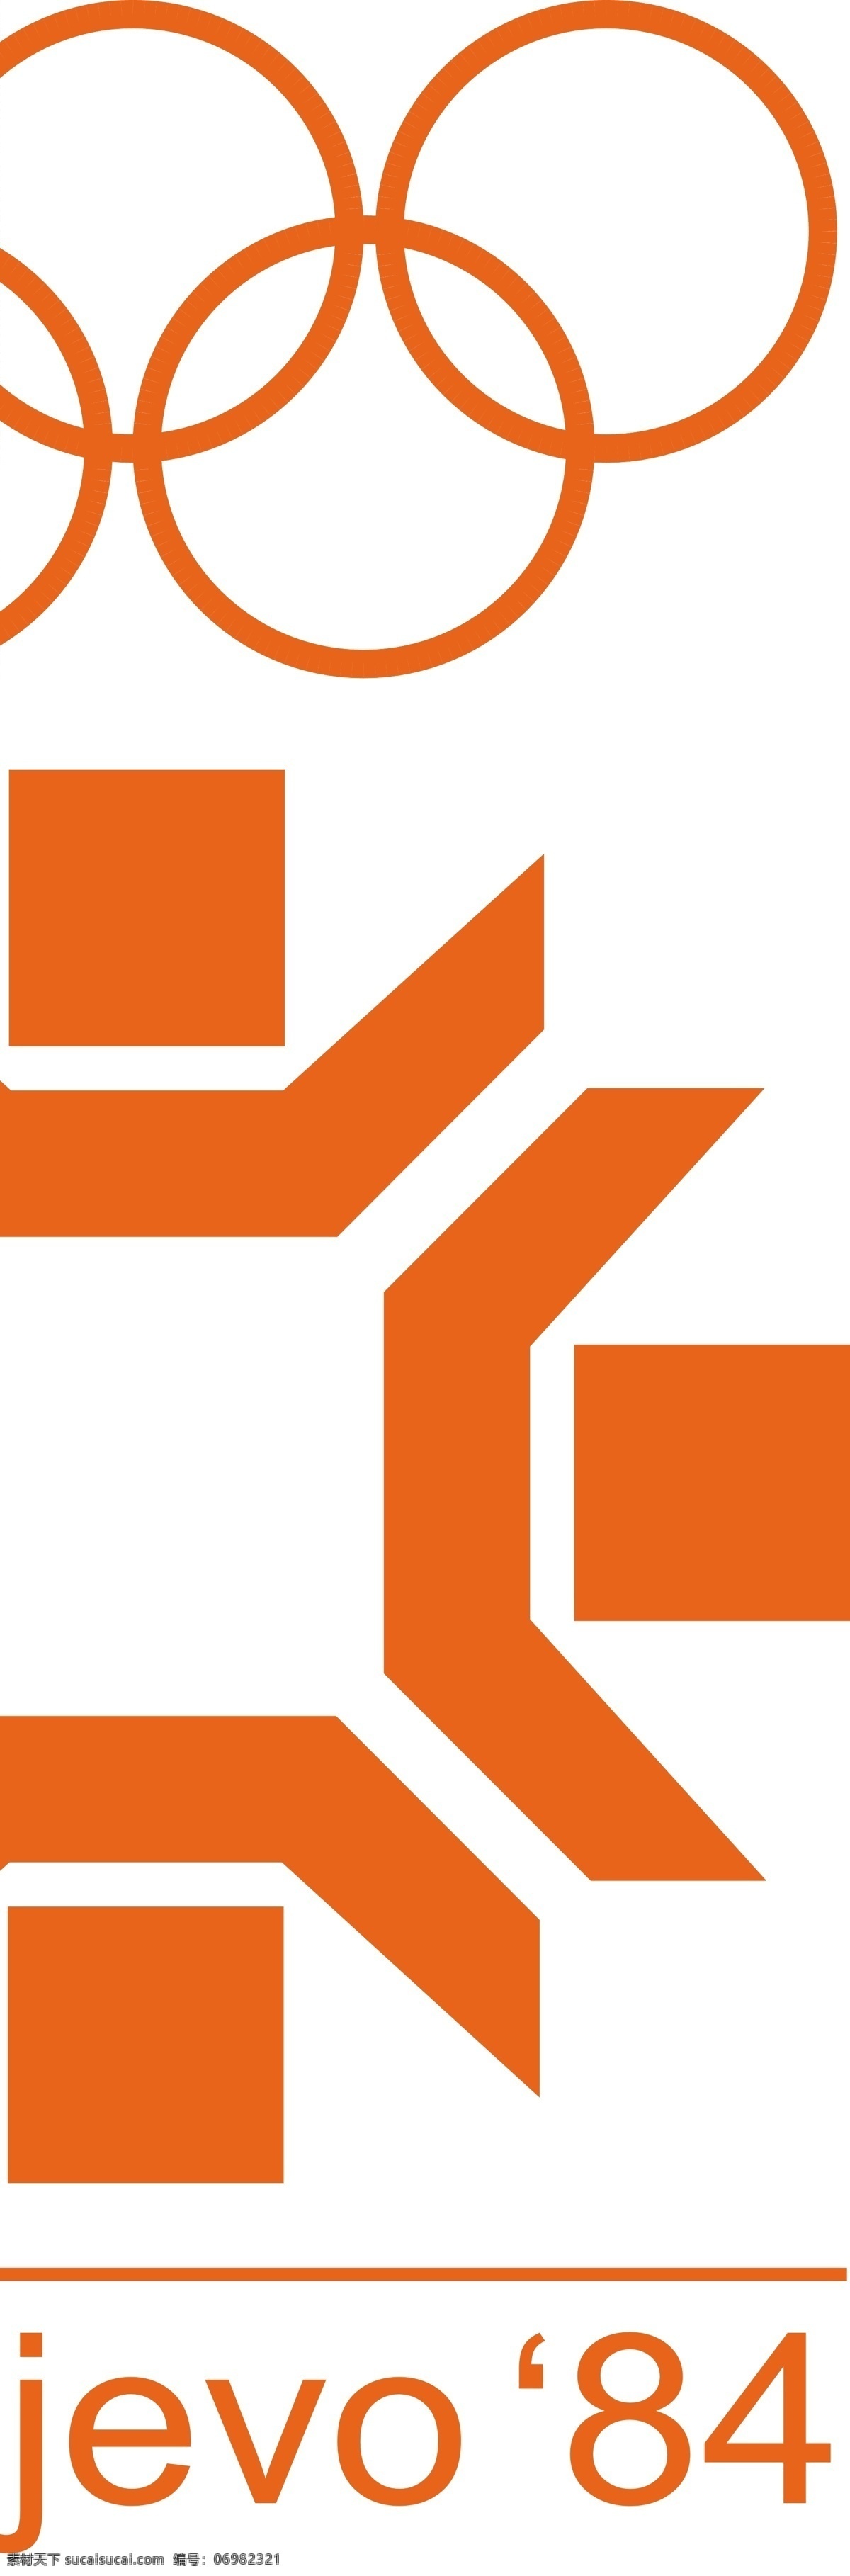 萨拉热窝 1984 冬季 奥运会 标志 自由 标识 psd源文件 logo设计